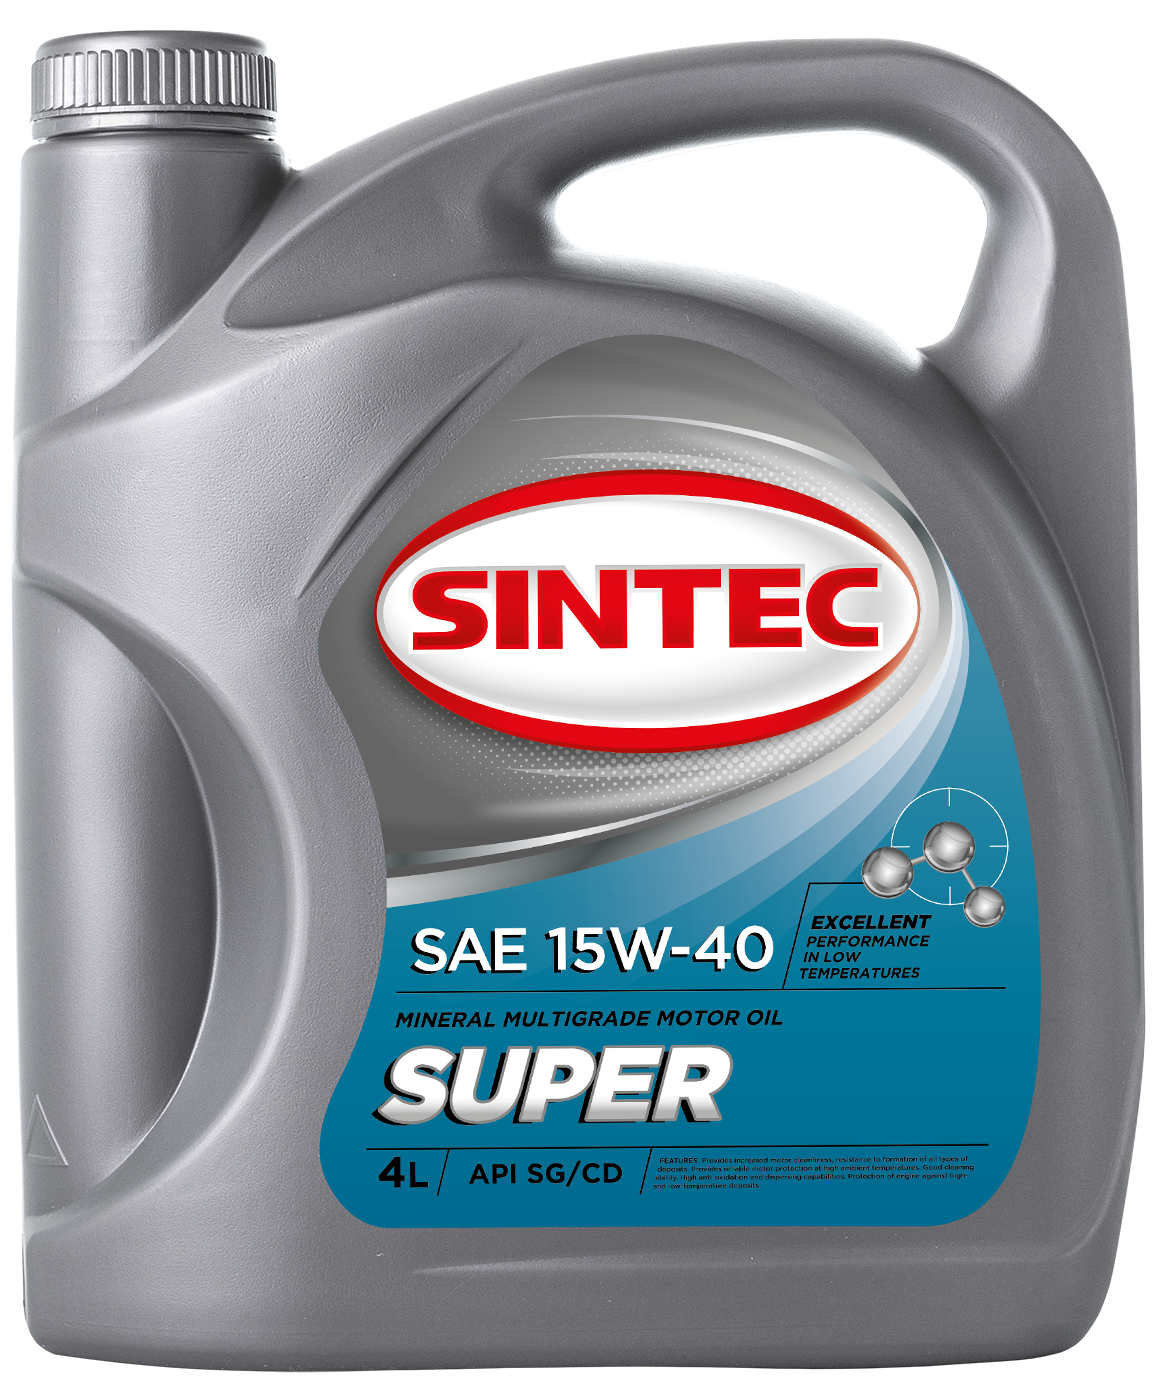 Минеральное моторное масло SINTEC Super 15W-40, 4 л 900314 — купить в интернет-магазине по низкой цене на Яндекс Маркете